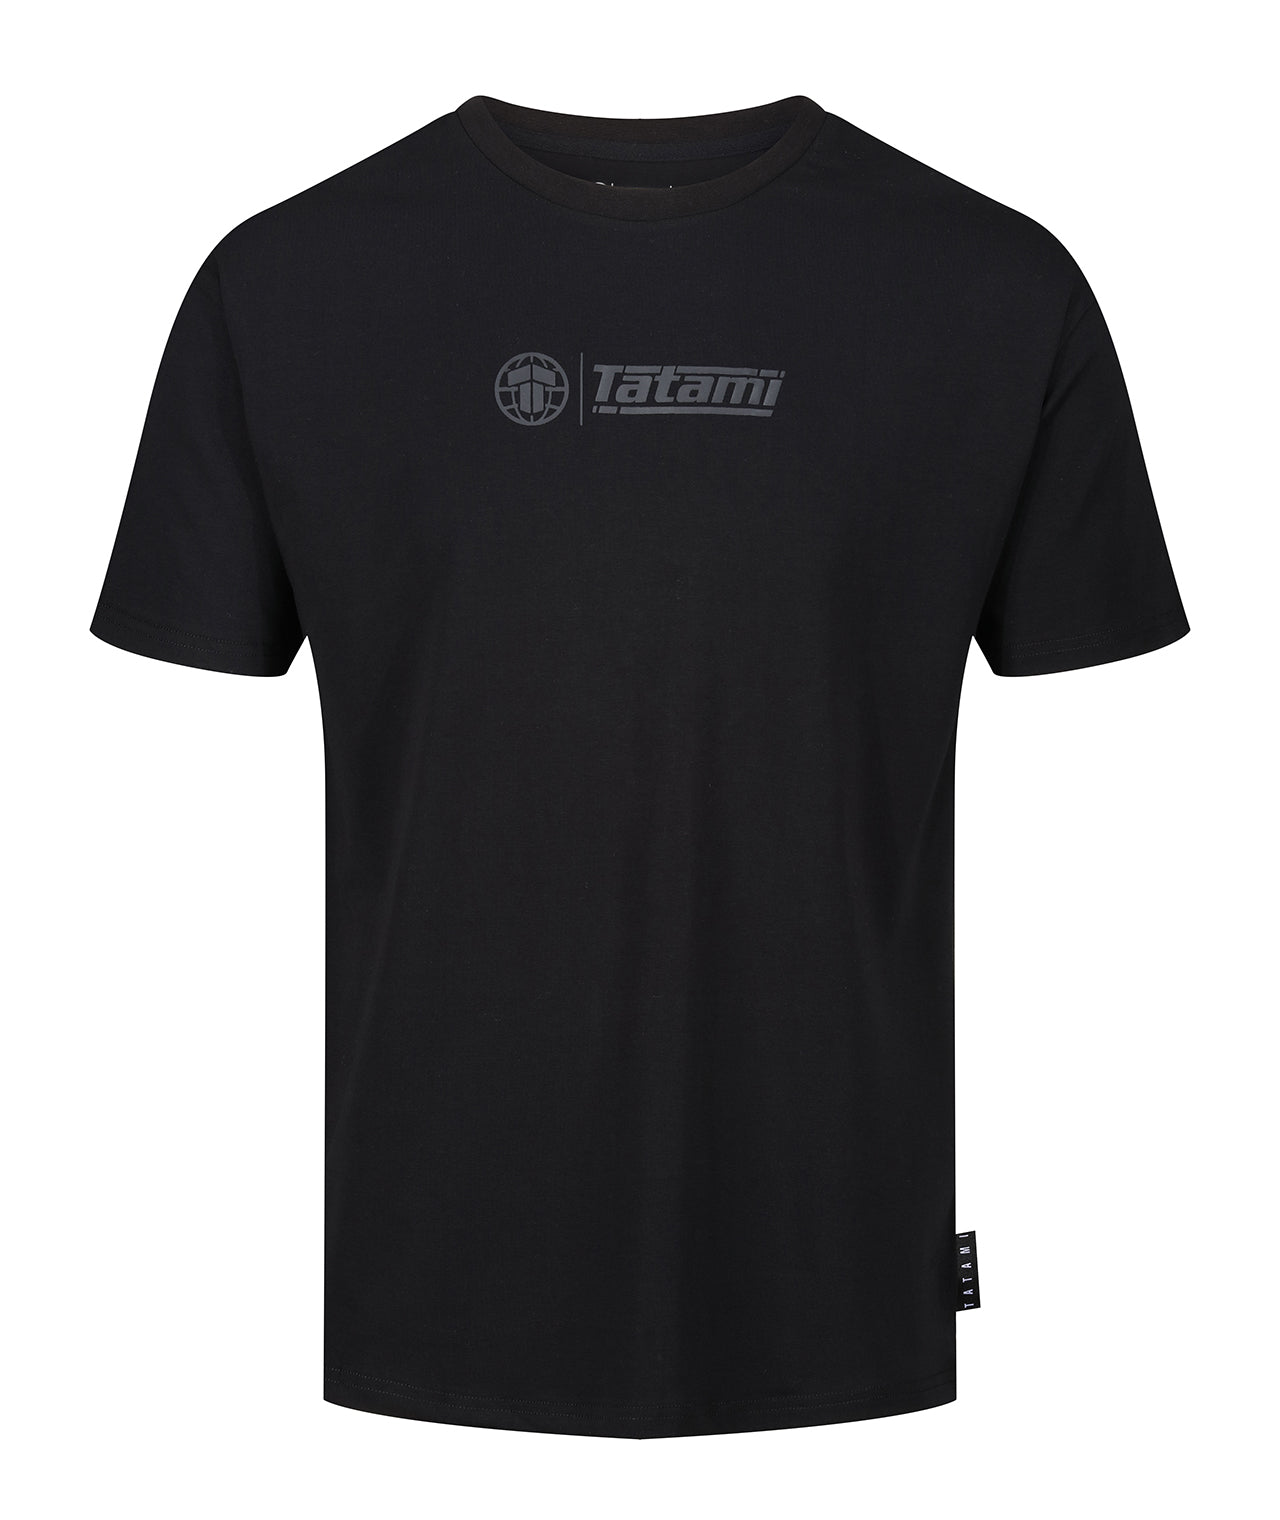 Impact T-Shirt - Black on Black – Tatami Fightwear Ltd.